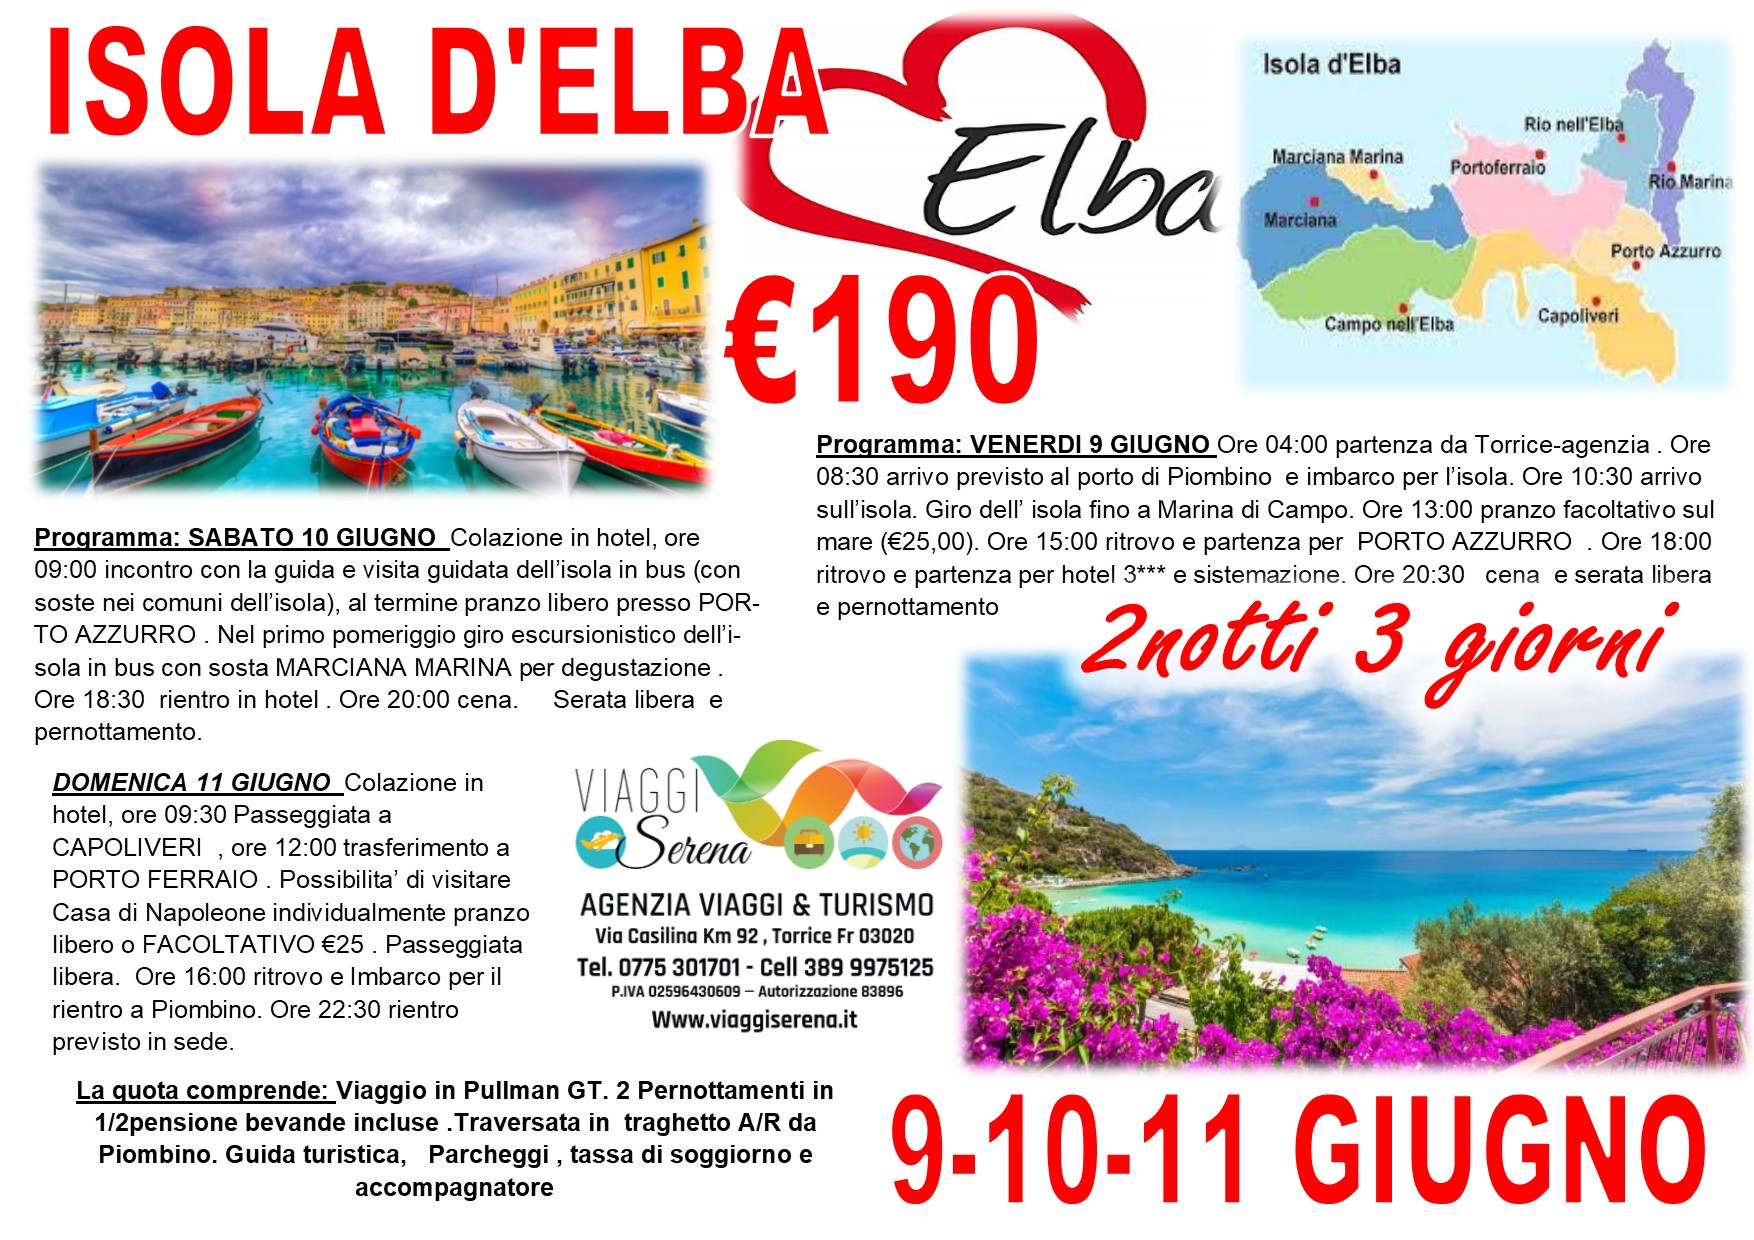 Viaggi di Gruppo: Isola d’Elba , Capoliveri, Porto Azzurro e  Marina di Campo 9-10-11 Giugno €190,00